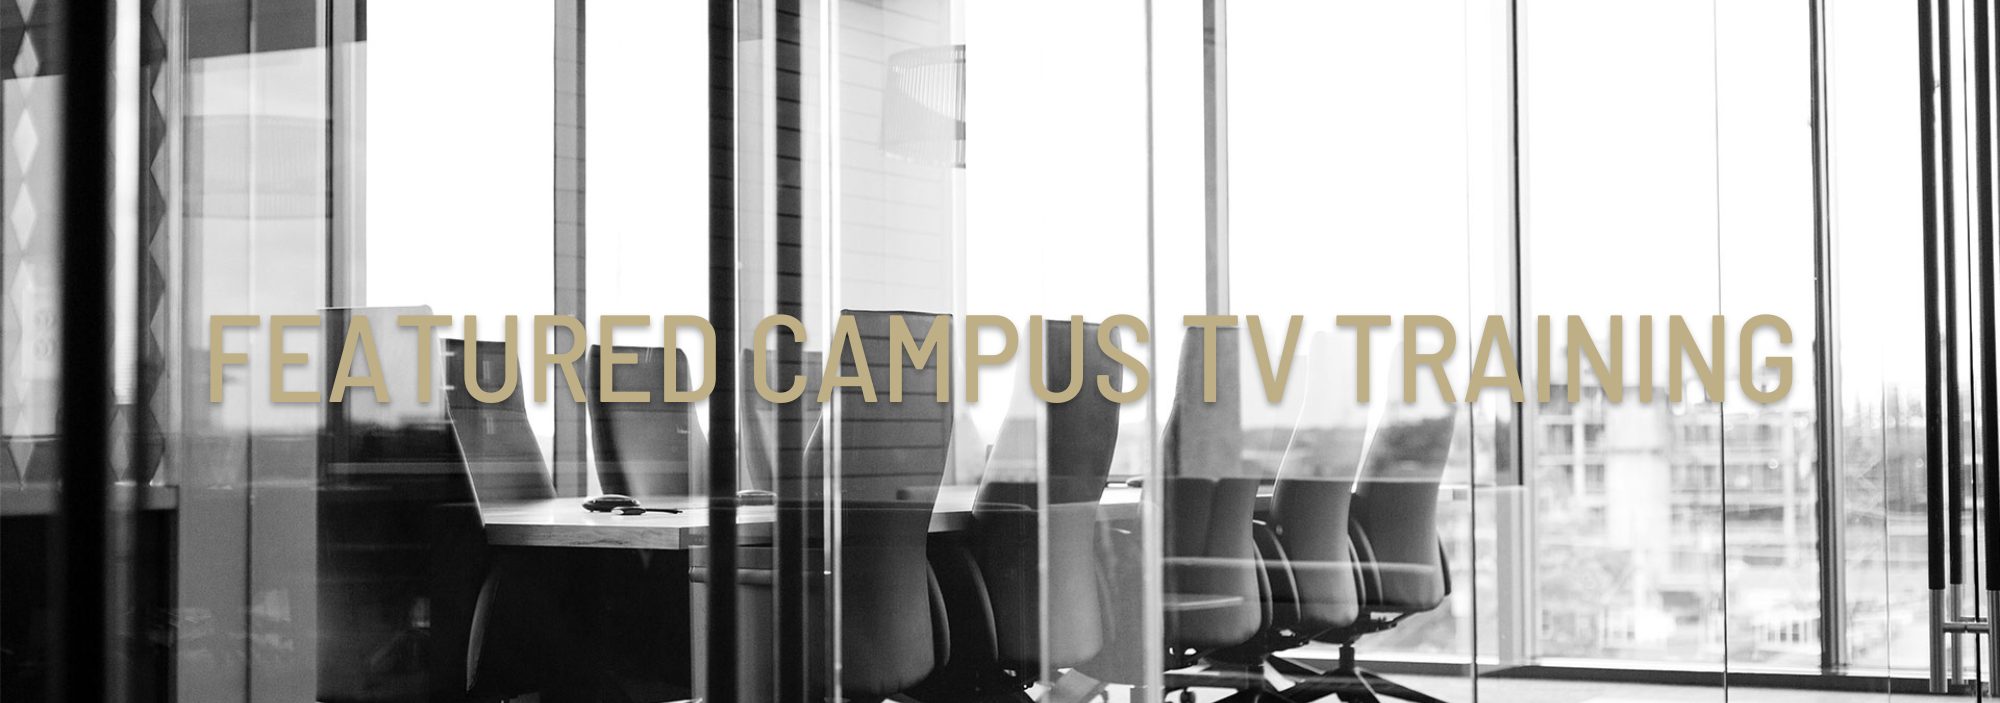 Featured Campus TV Training (2)